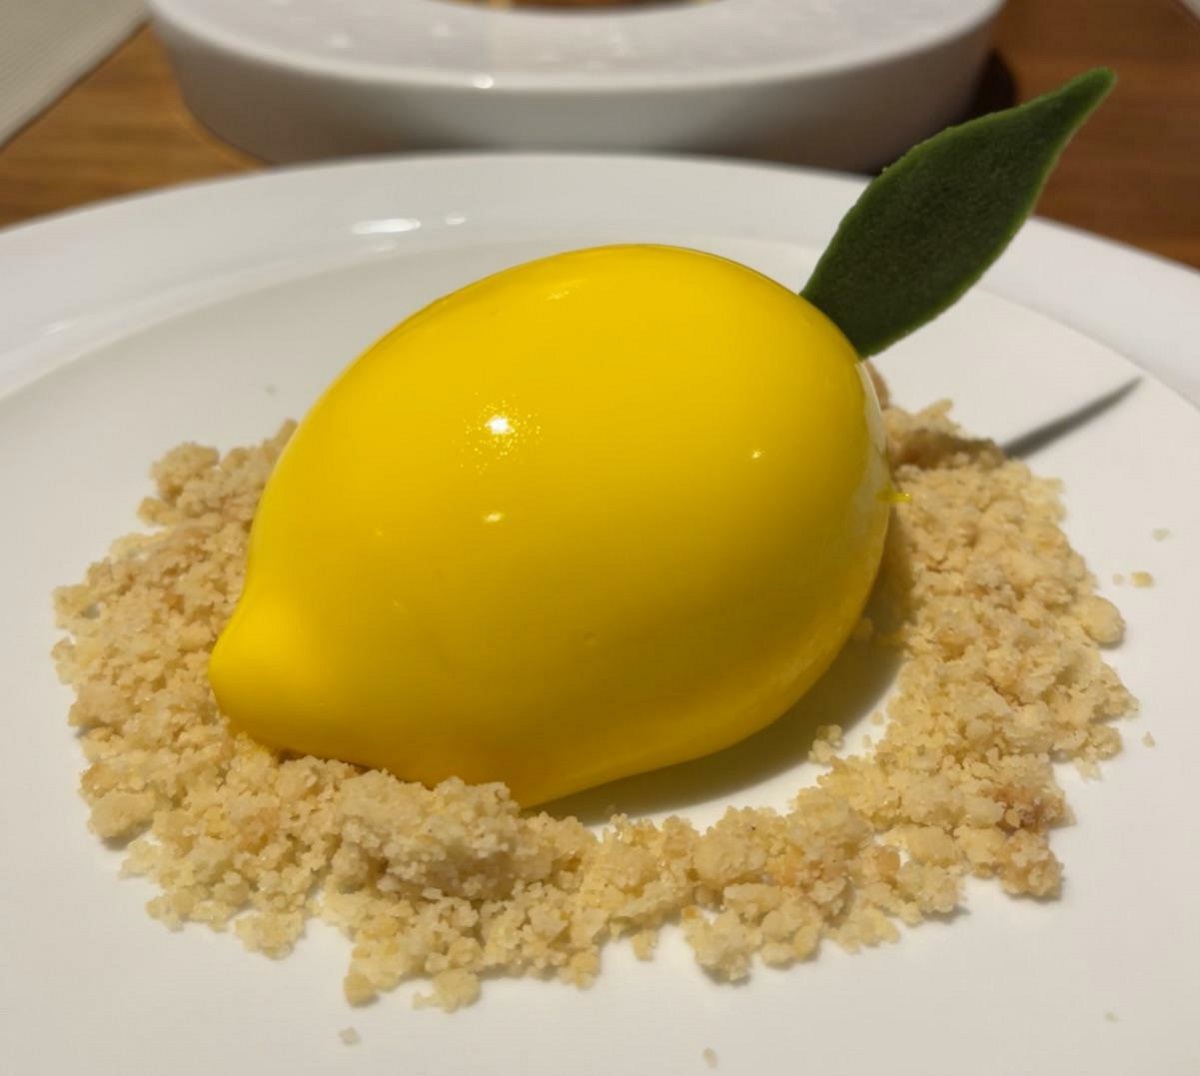 Lemon Custard Dessert Called "Not A Lemon" In Duoro Valley, Portugal